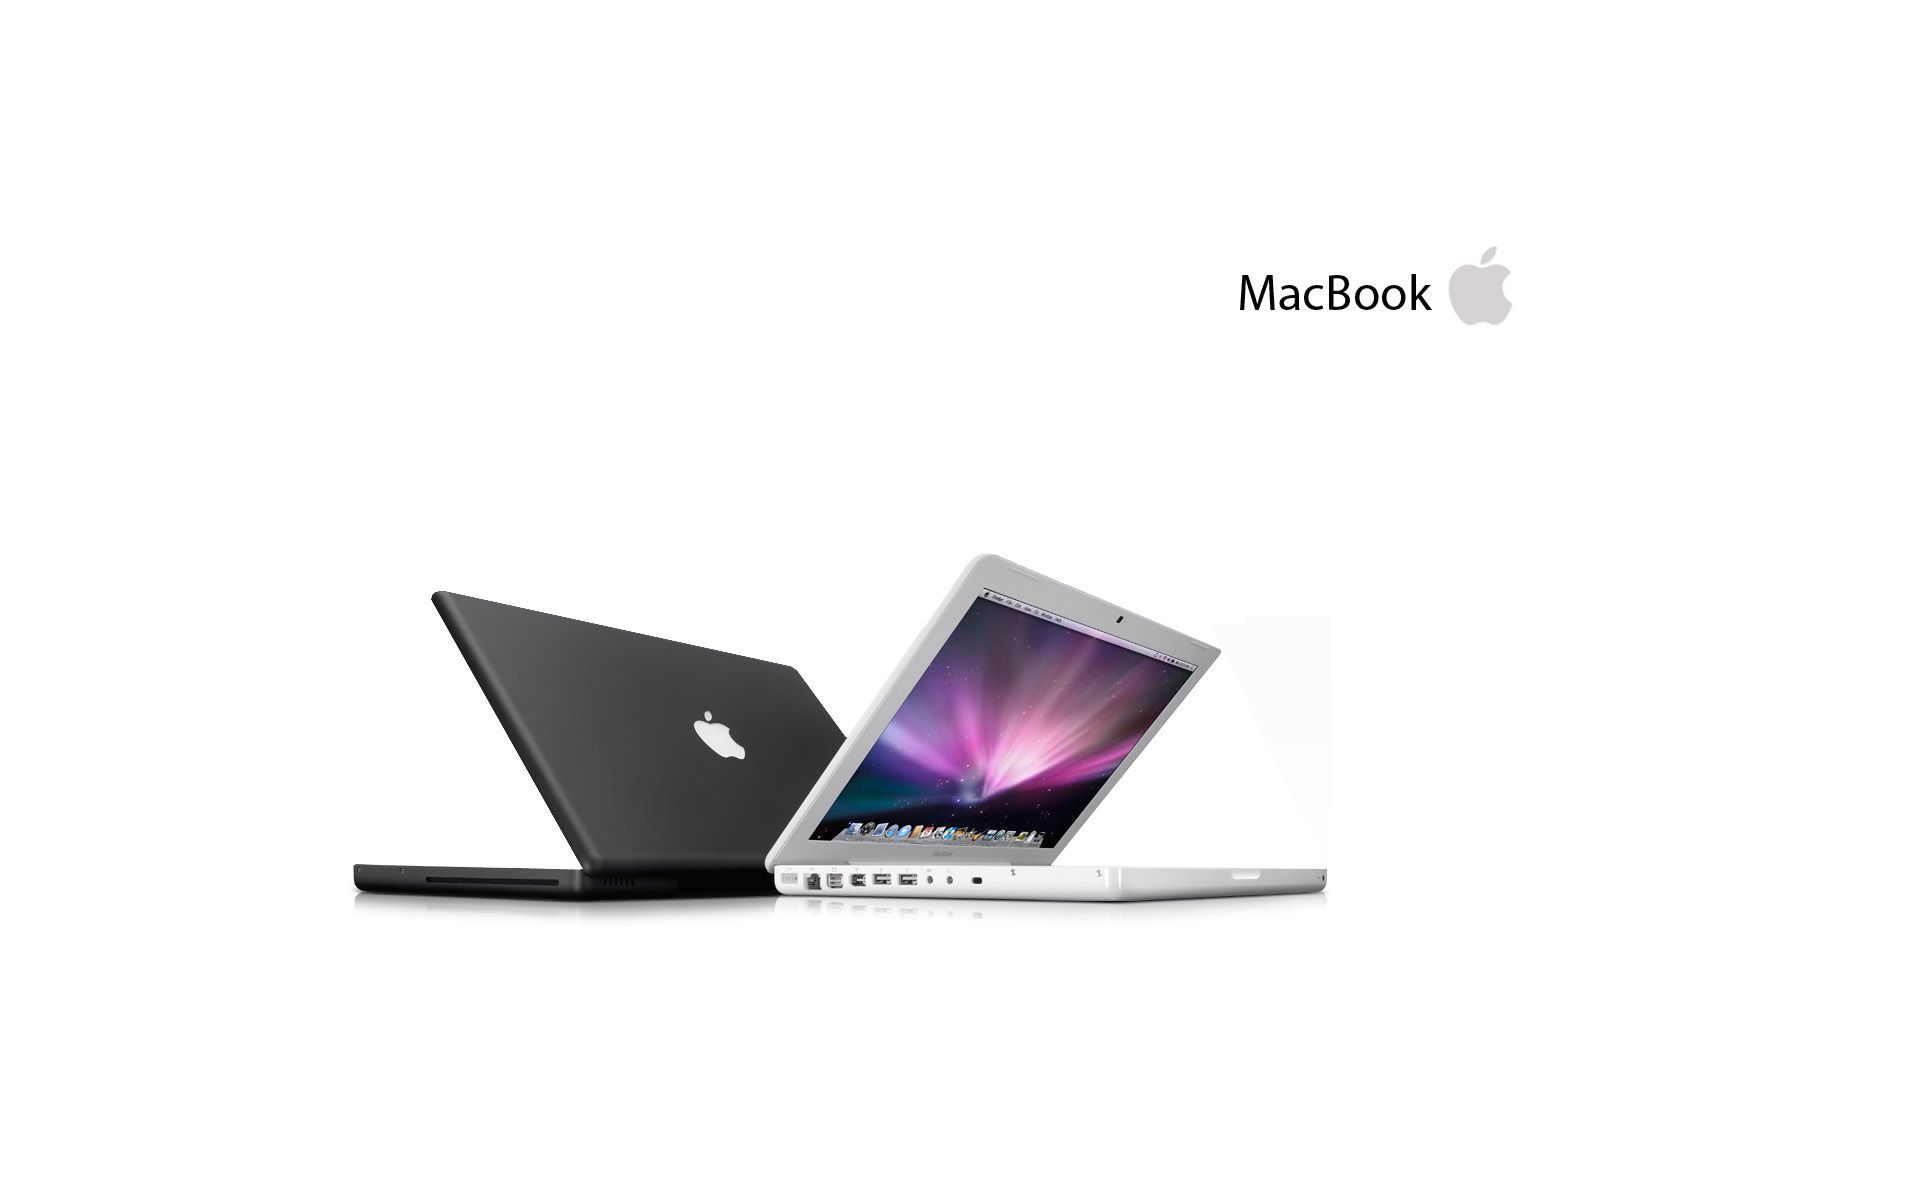 Leopard, desktop, mac, wallpaper, macbook, laptop, background (#3764)